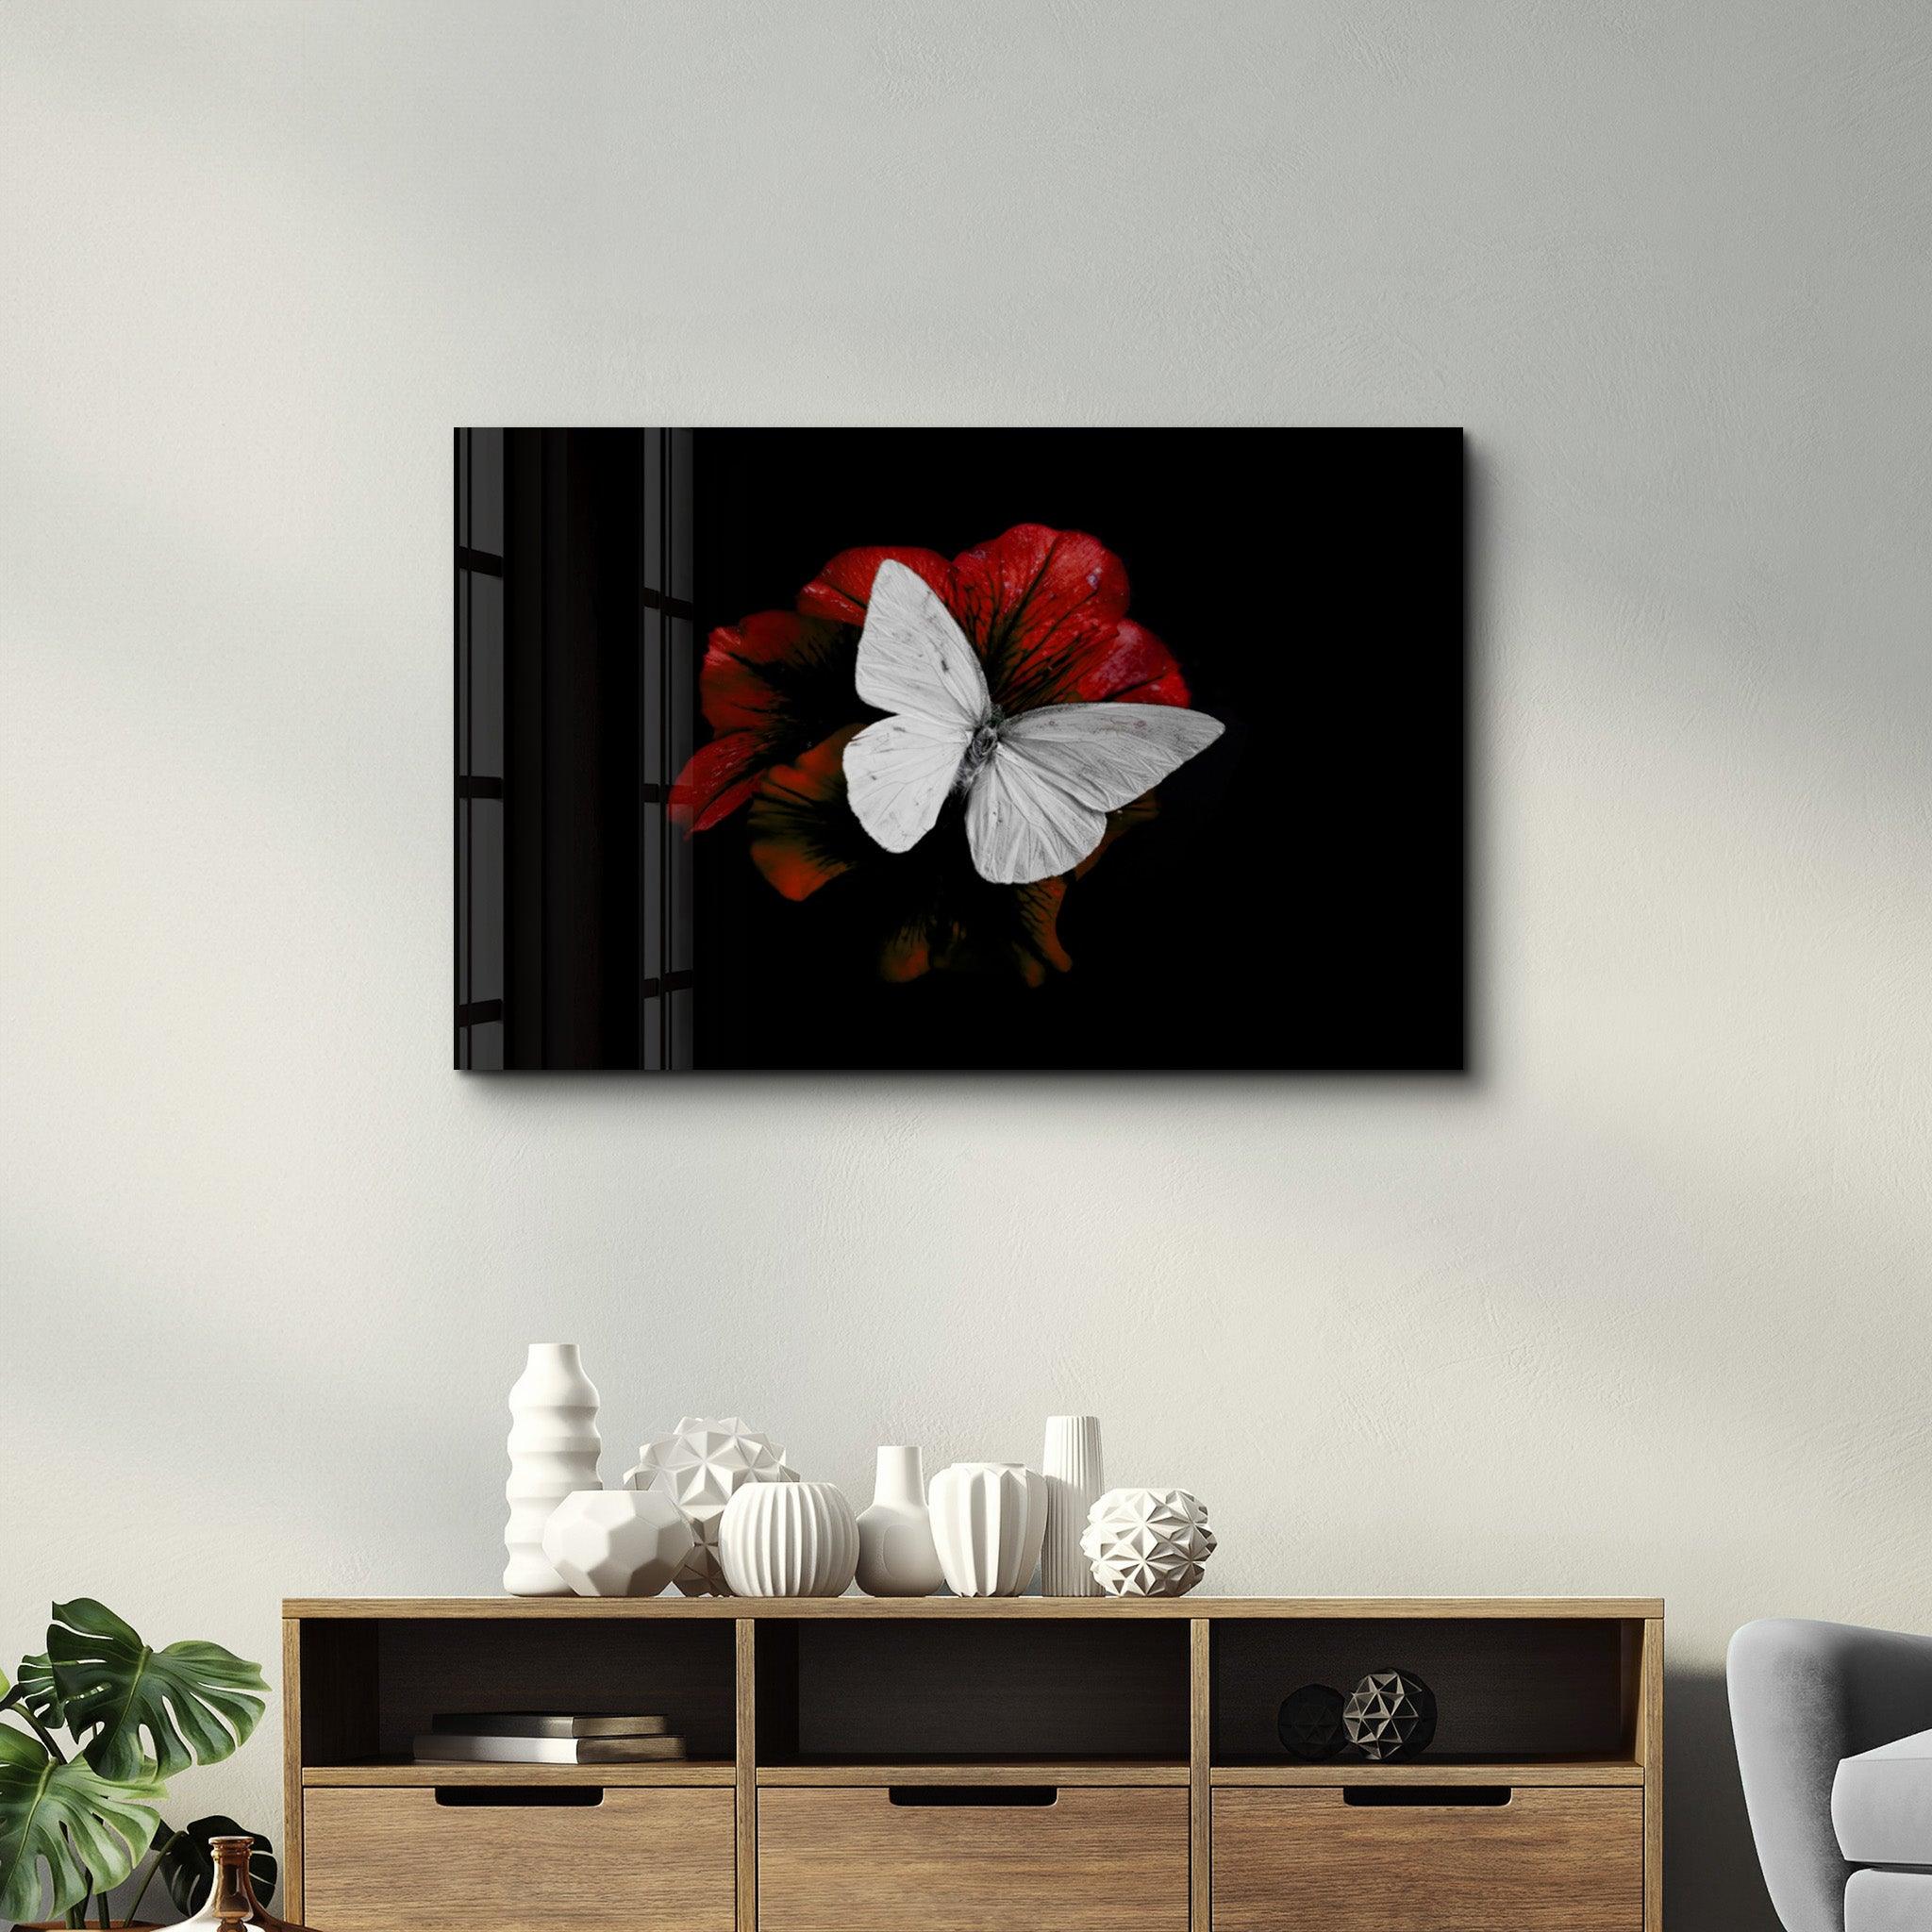 Butterfly 3 | Glass Wall Art - ArtDesigna Glass Printing Wall Art